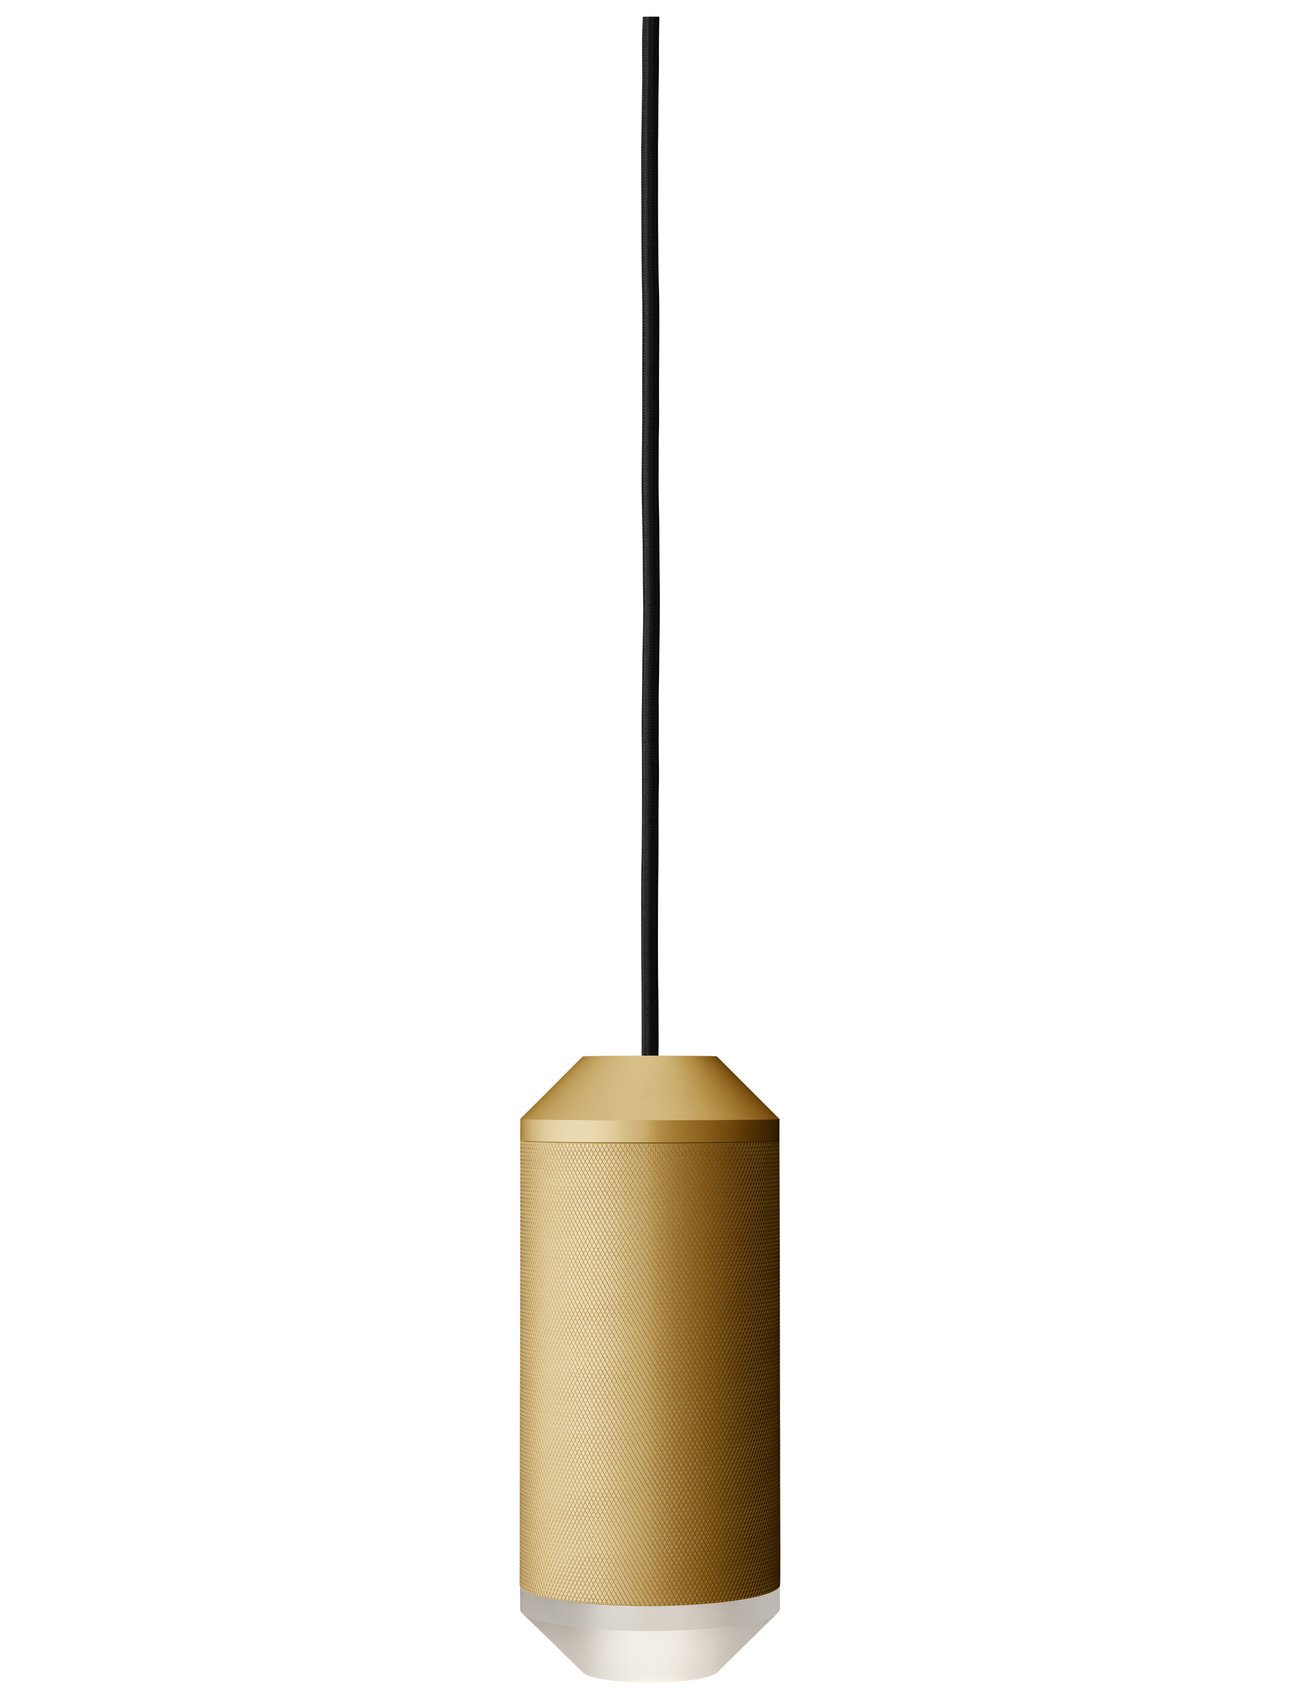 Backbeat Home Lighting Lamps Ceiling Lamps Pendant Lamps Gold Frandsen Lighting